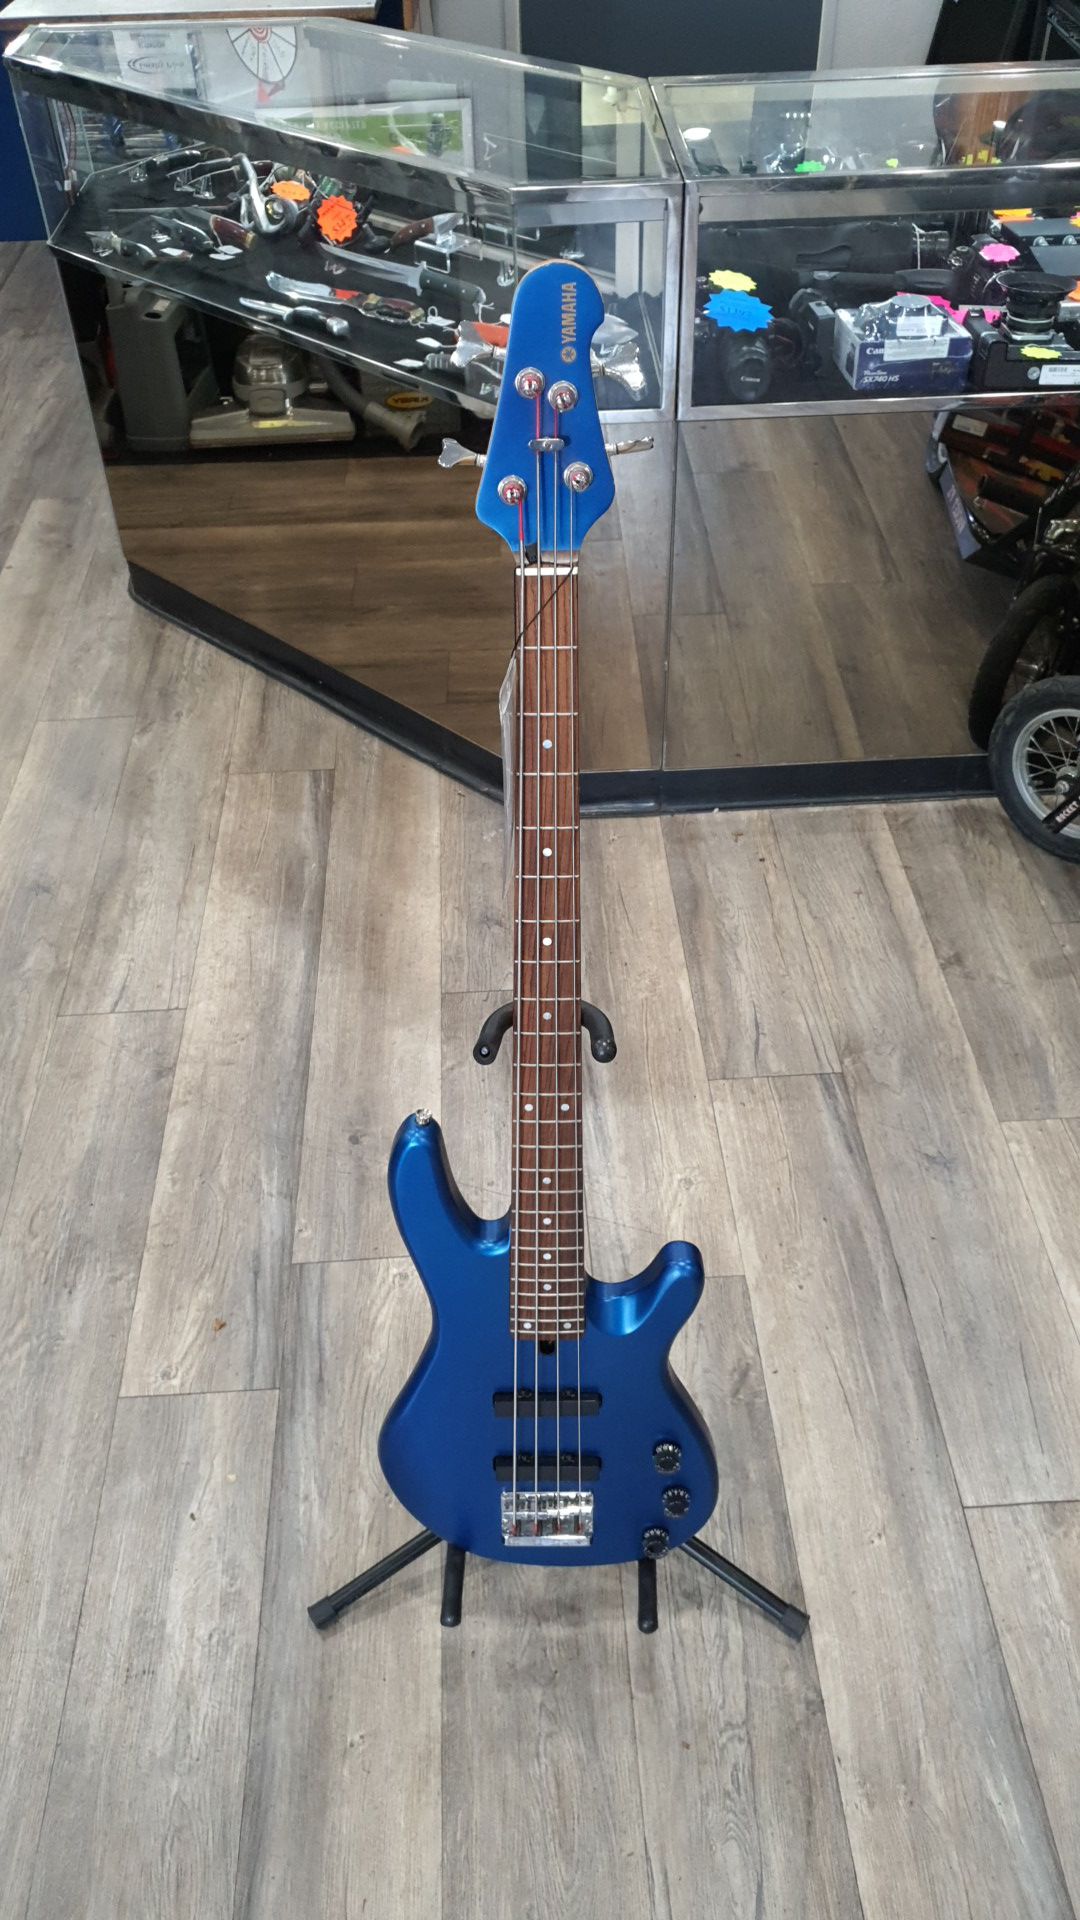 Yamaha Bass